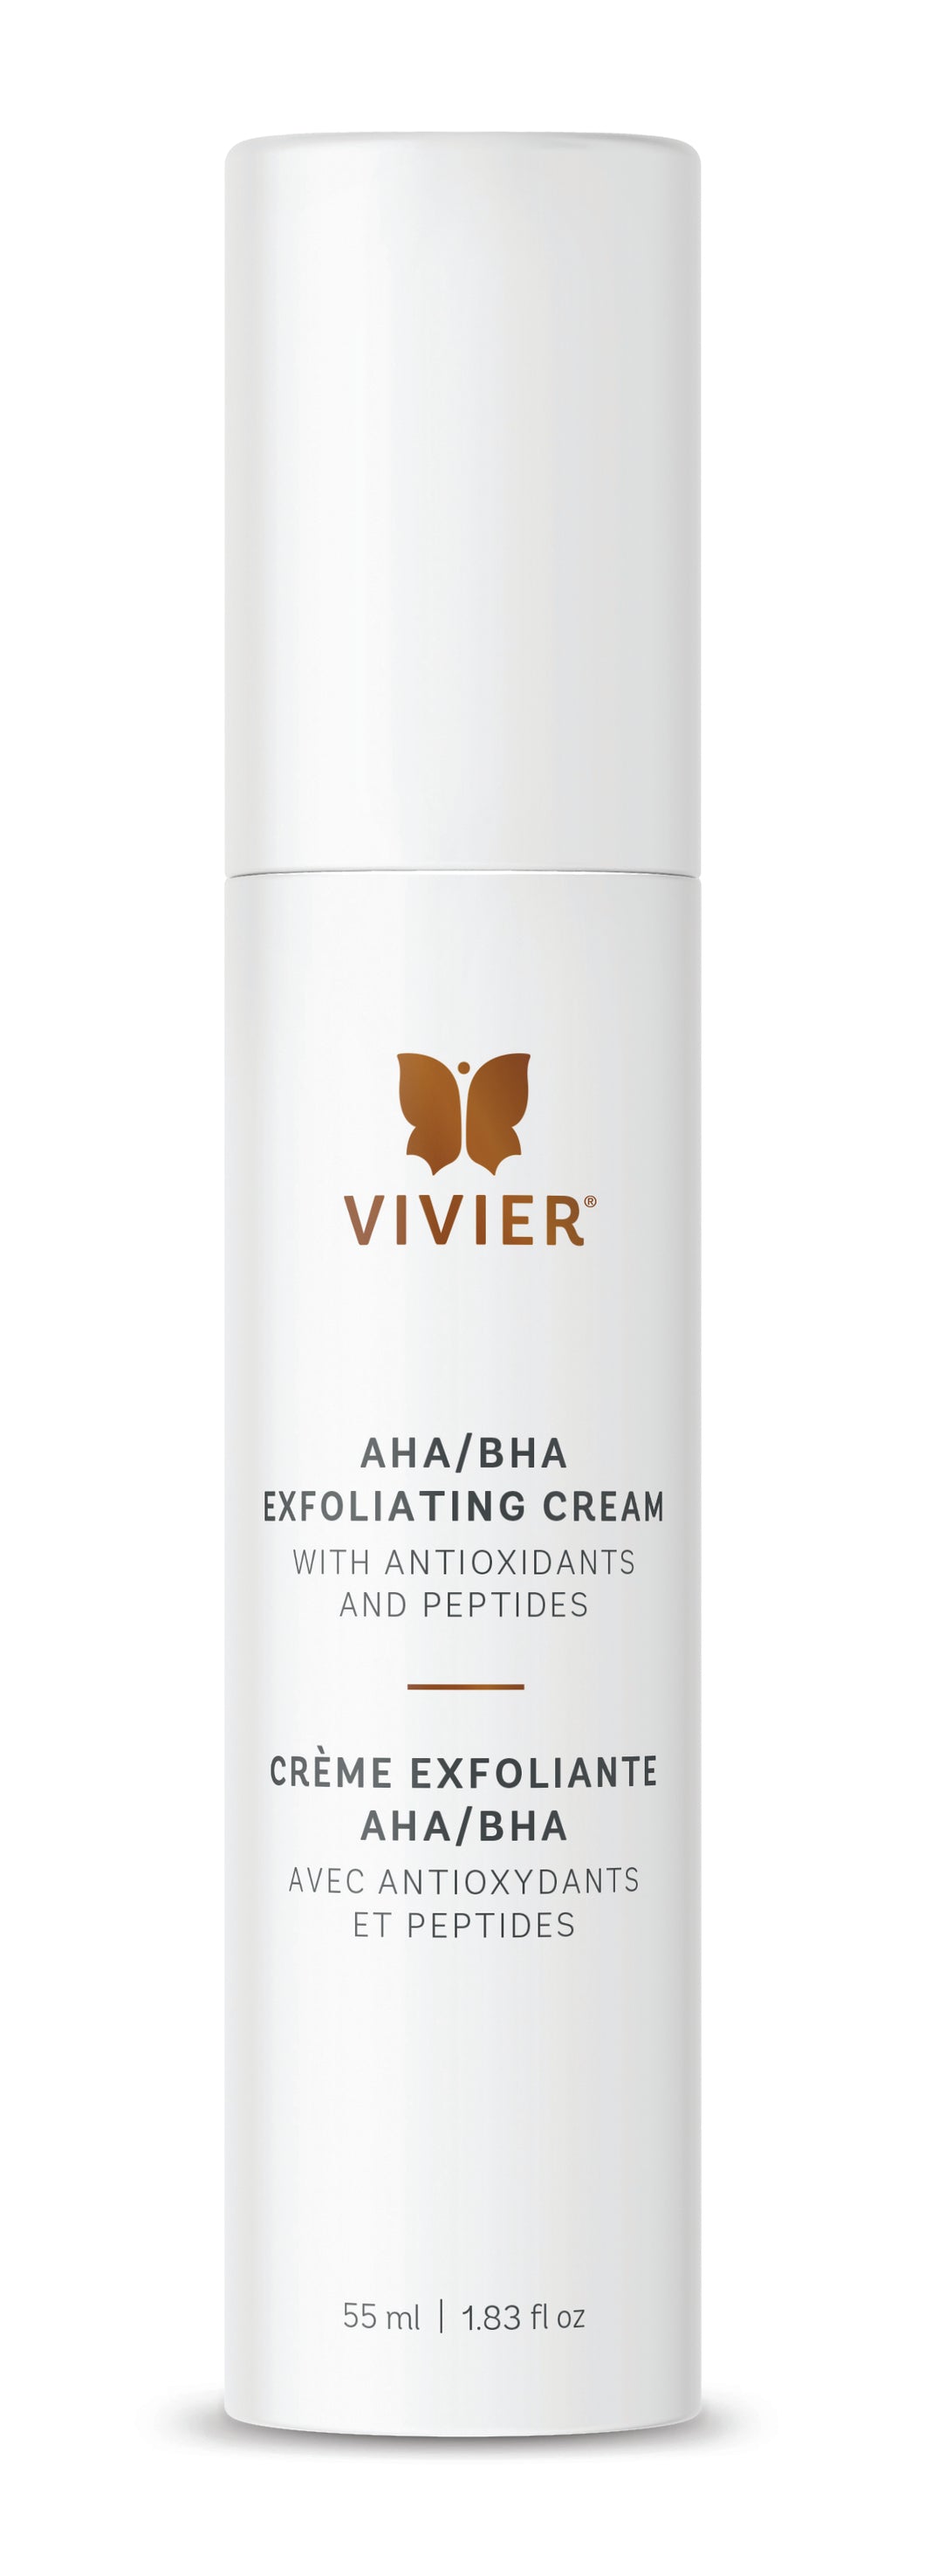 AHA/BHA Exfoliating Cream